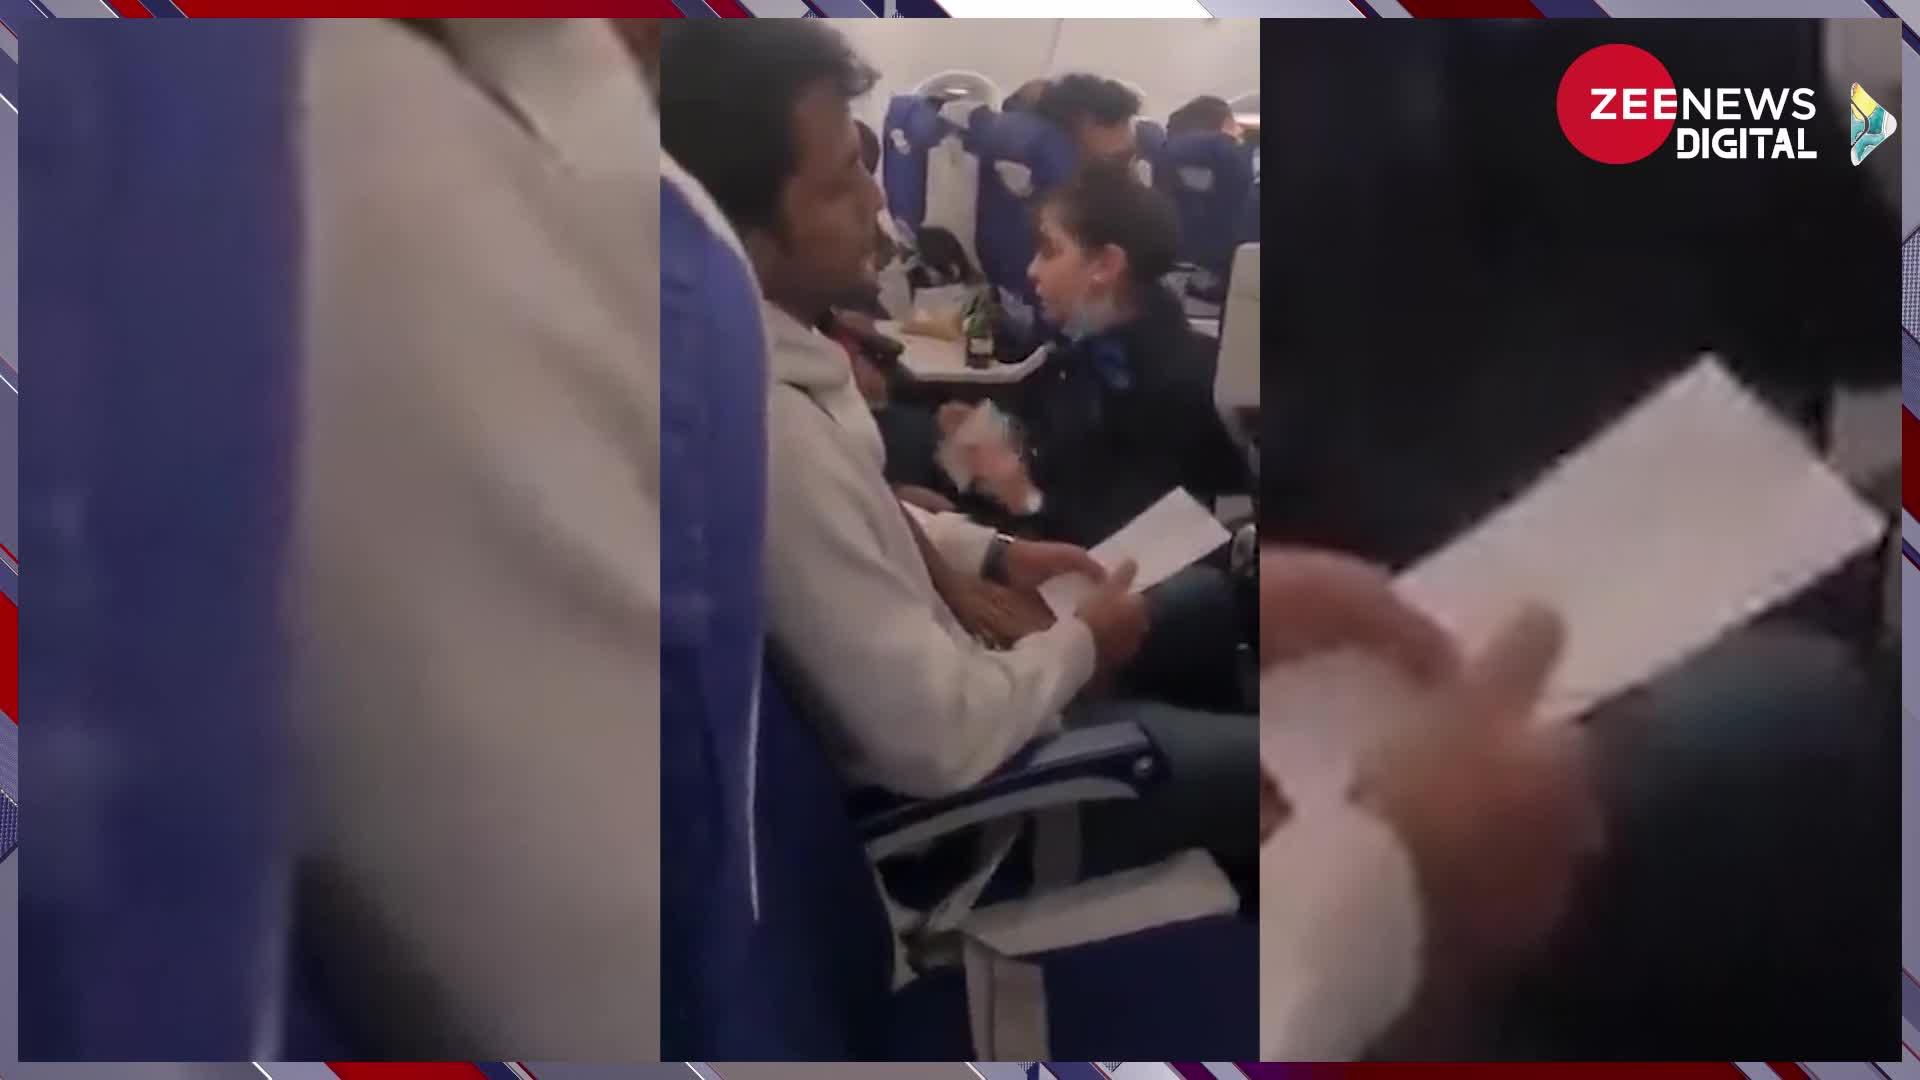 Viral Air Hostess: 'मै आपकी नौकर नहीं'- गुस्से में एयर होस्टेस ने पैसेंजर को ही कह दी ये बात, देखें वायरल वीडियो